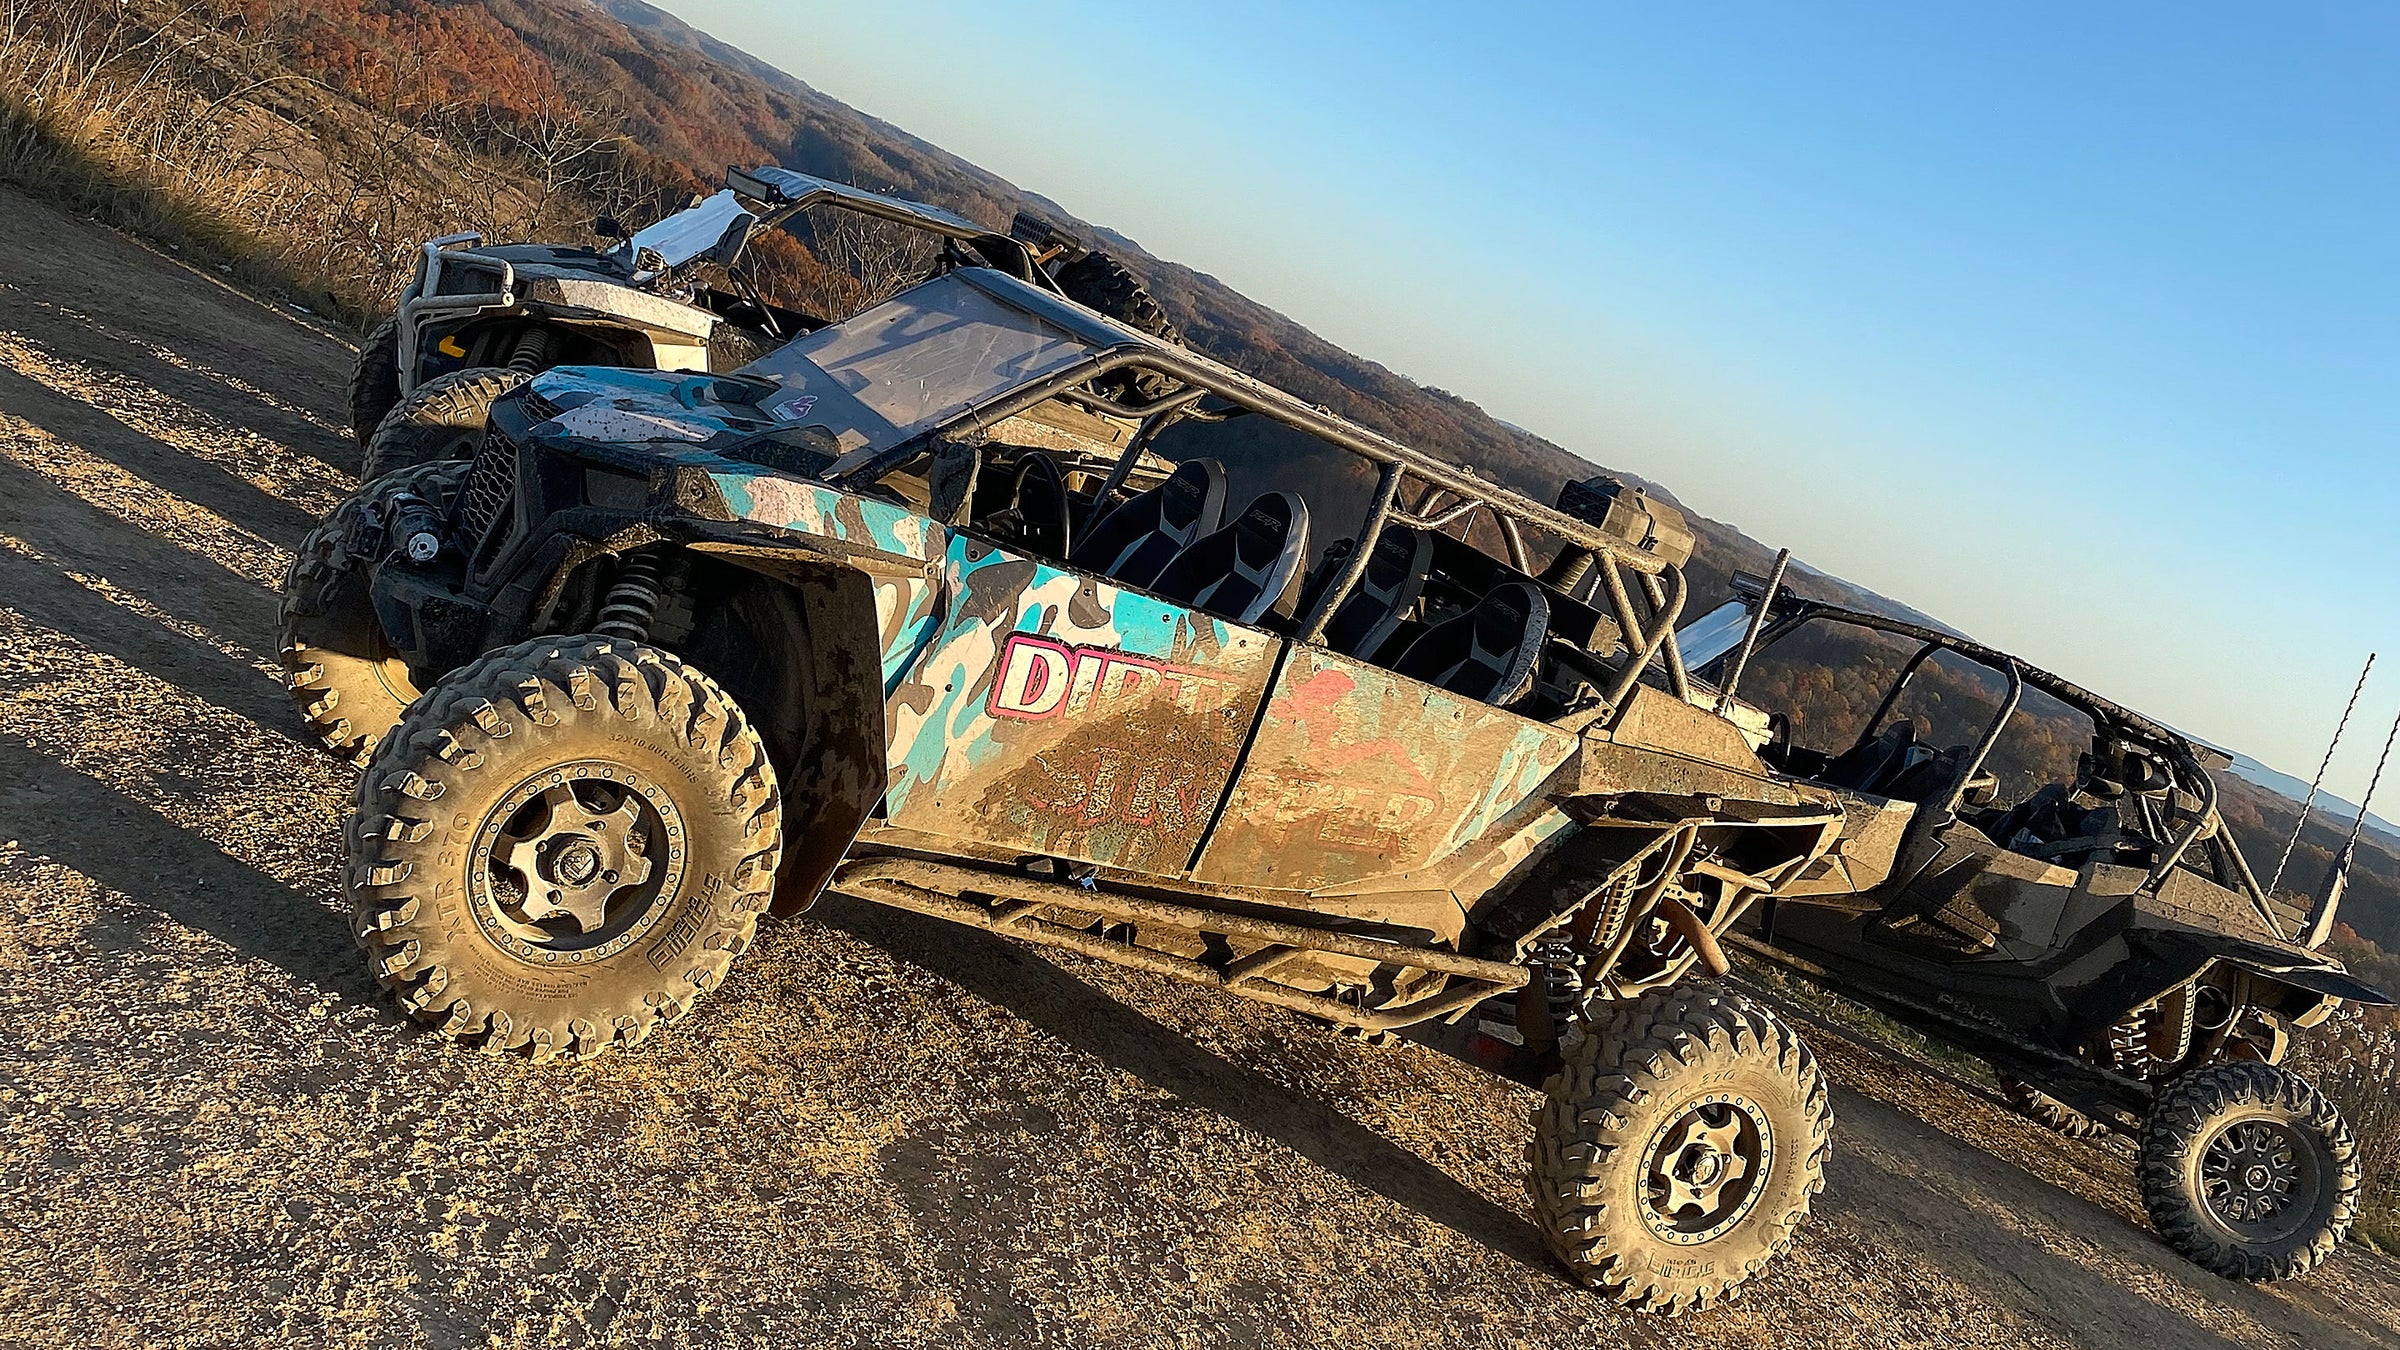 Muddy Dirty Stripper ATV